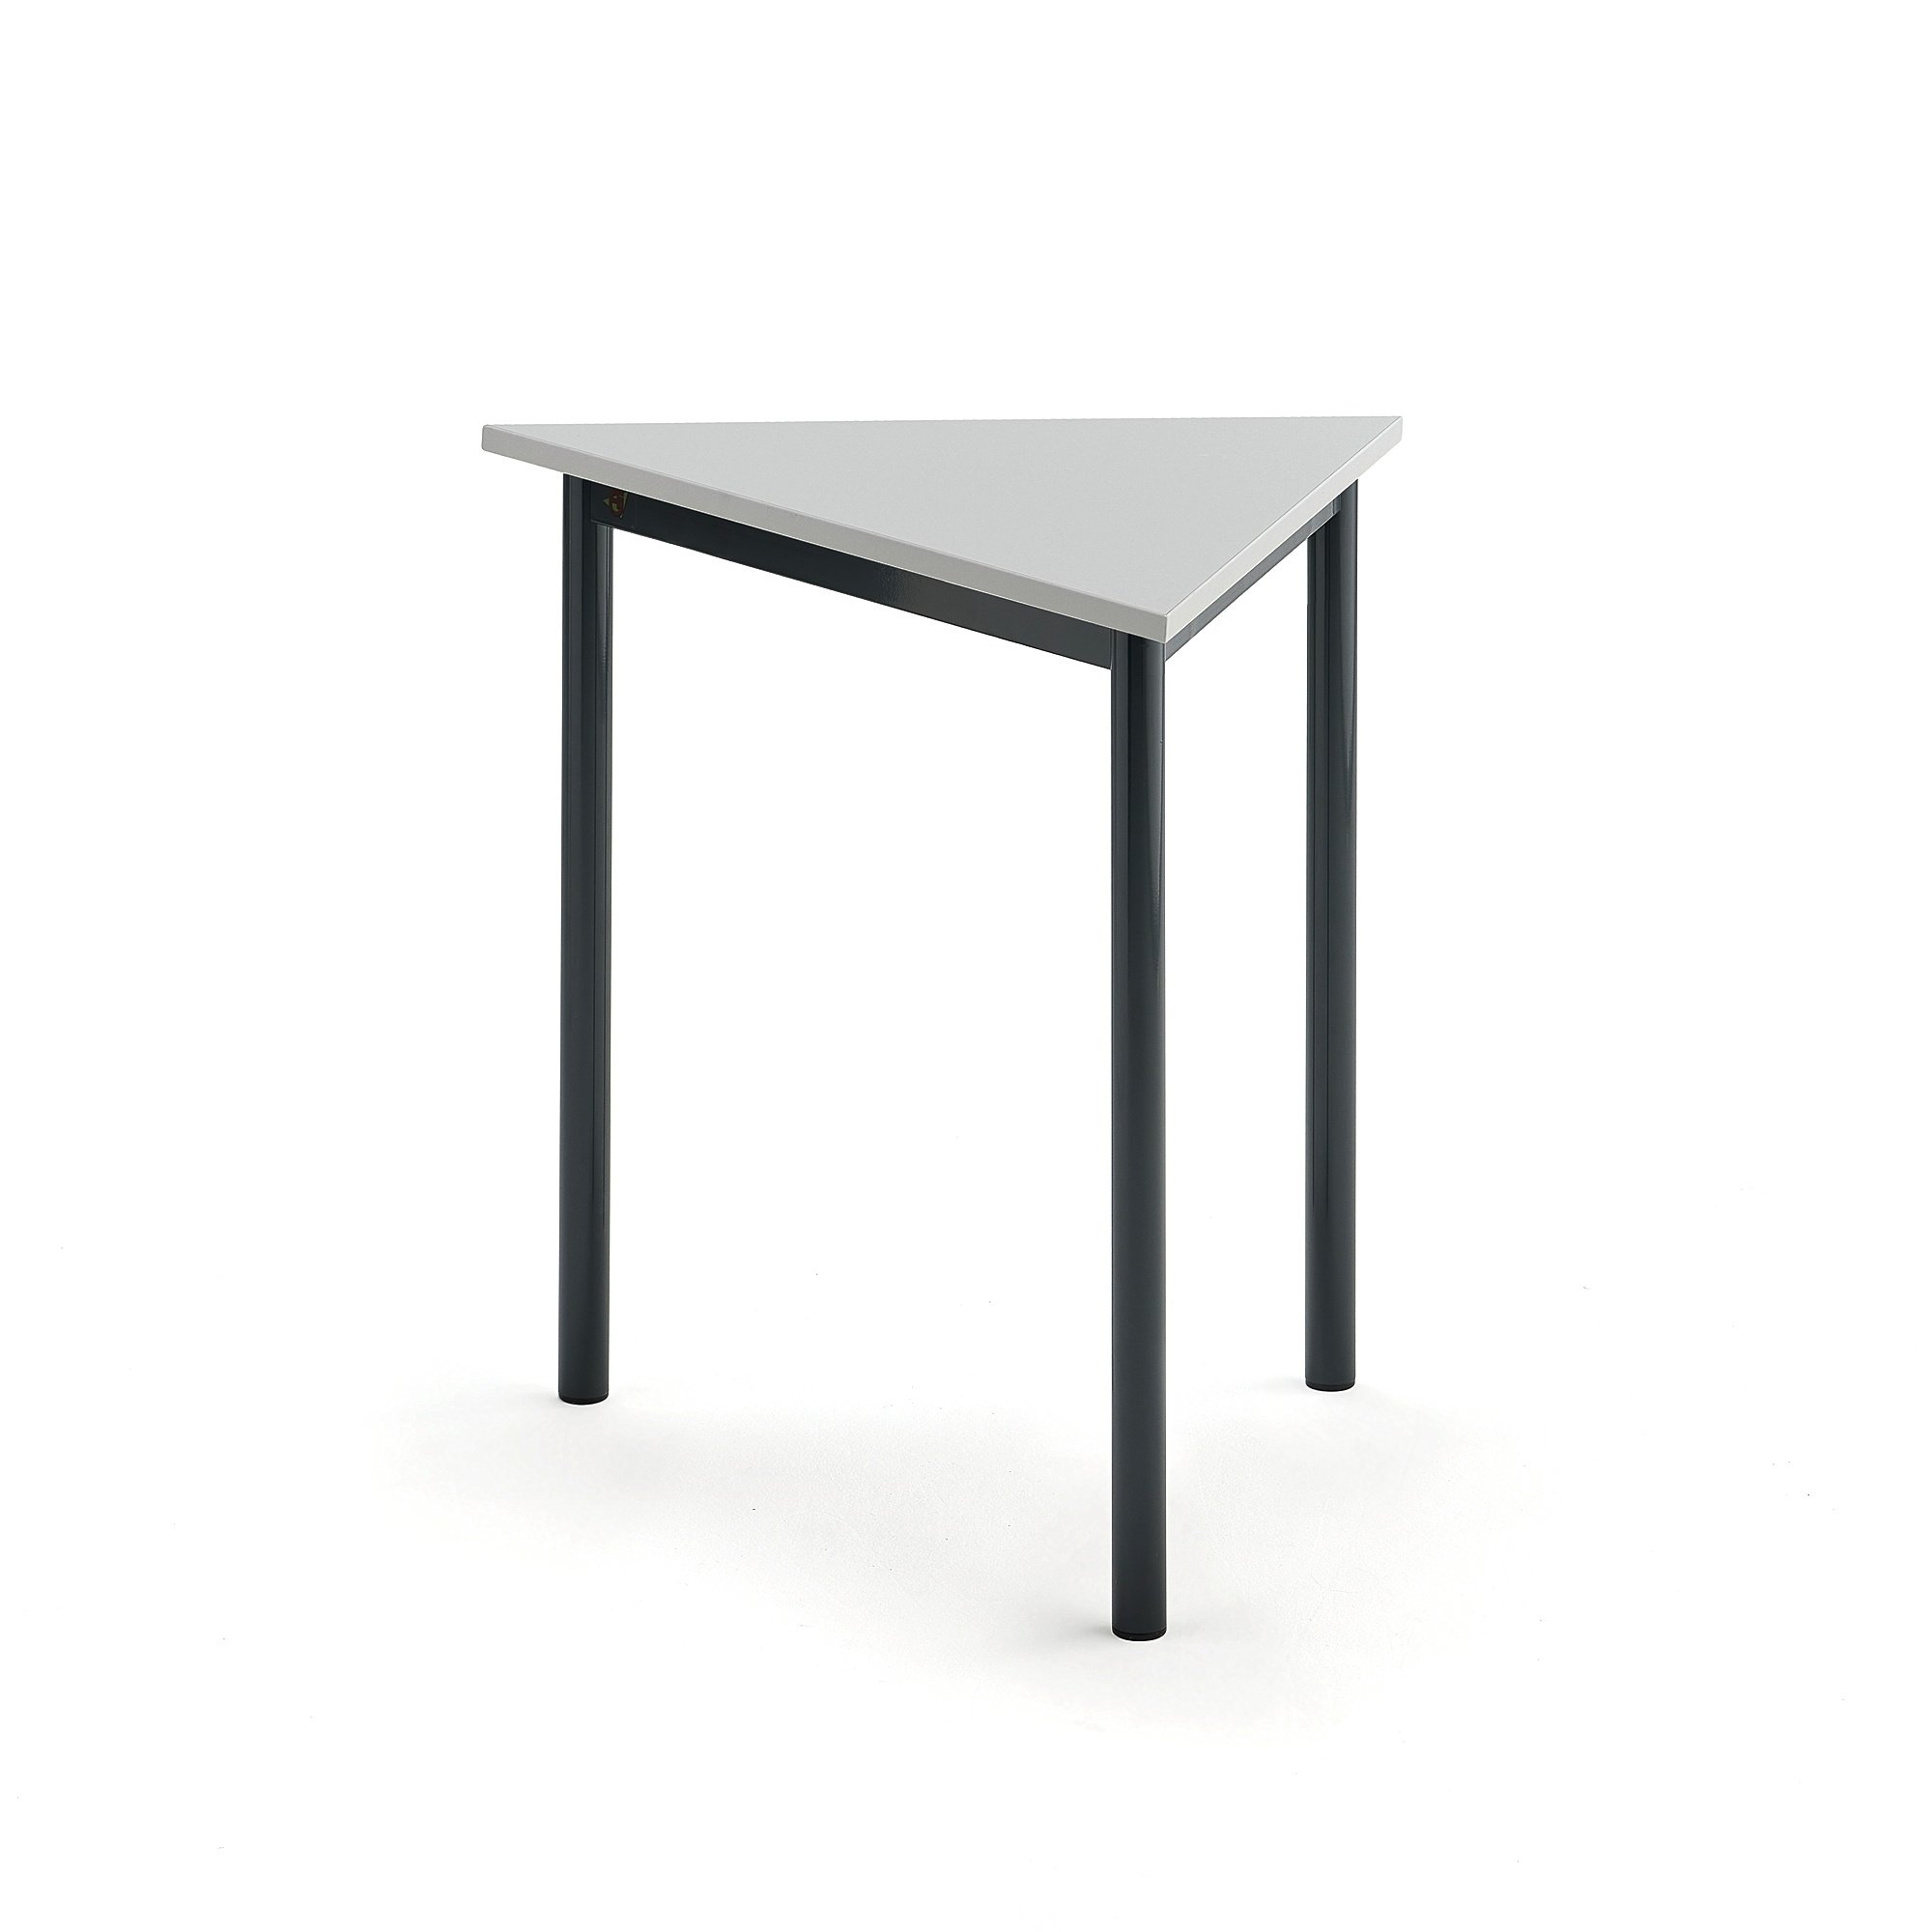 Stůl SONITUS TRIANGEL, 800x700x720 mm, antracitově šedé nohy, HPL deska tlumící hluk, šedá